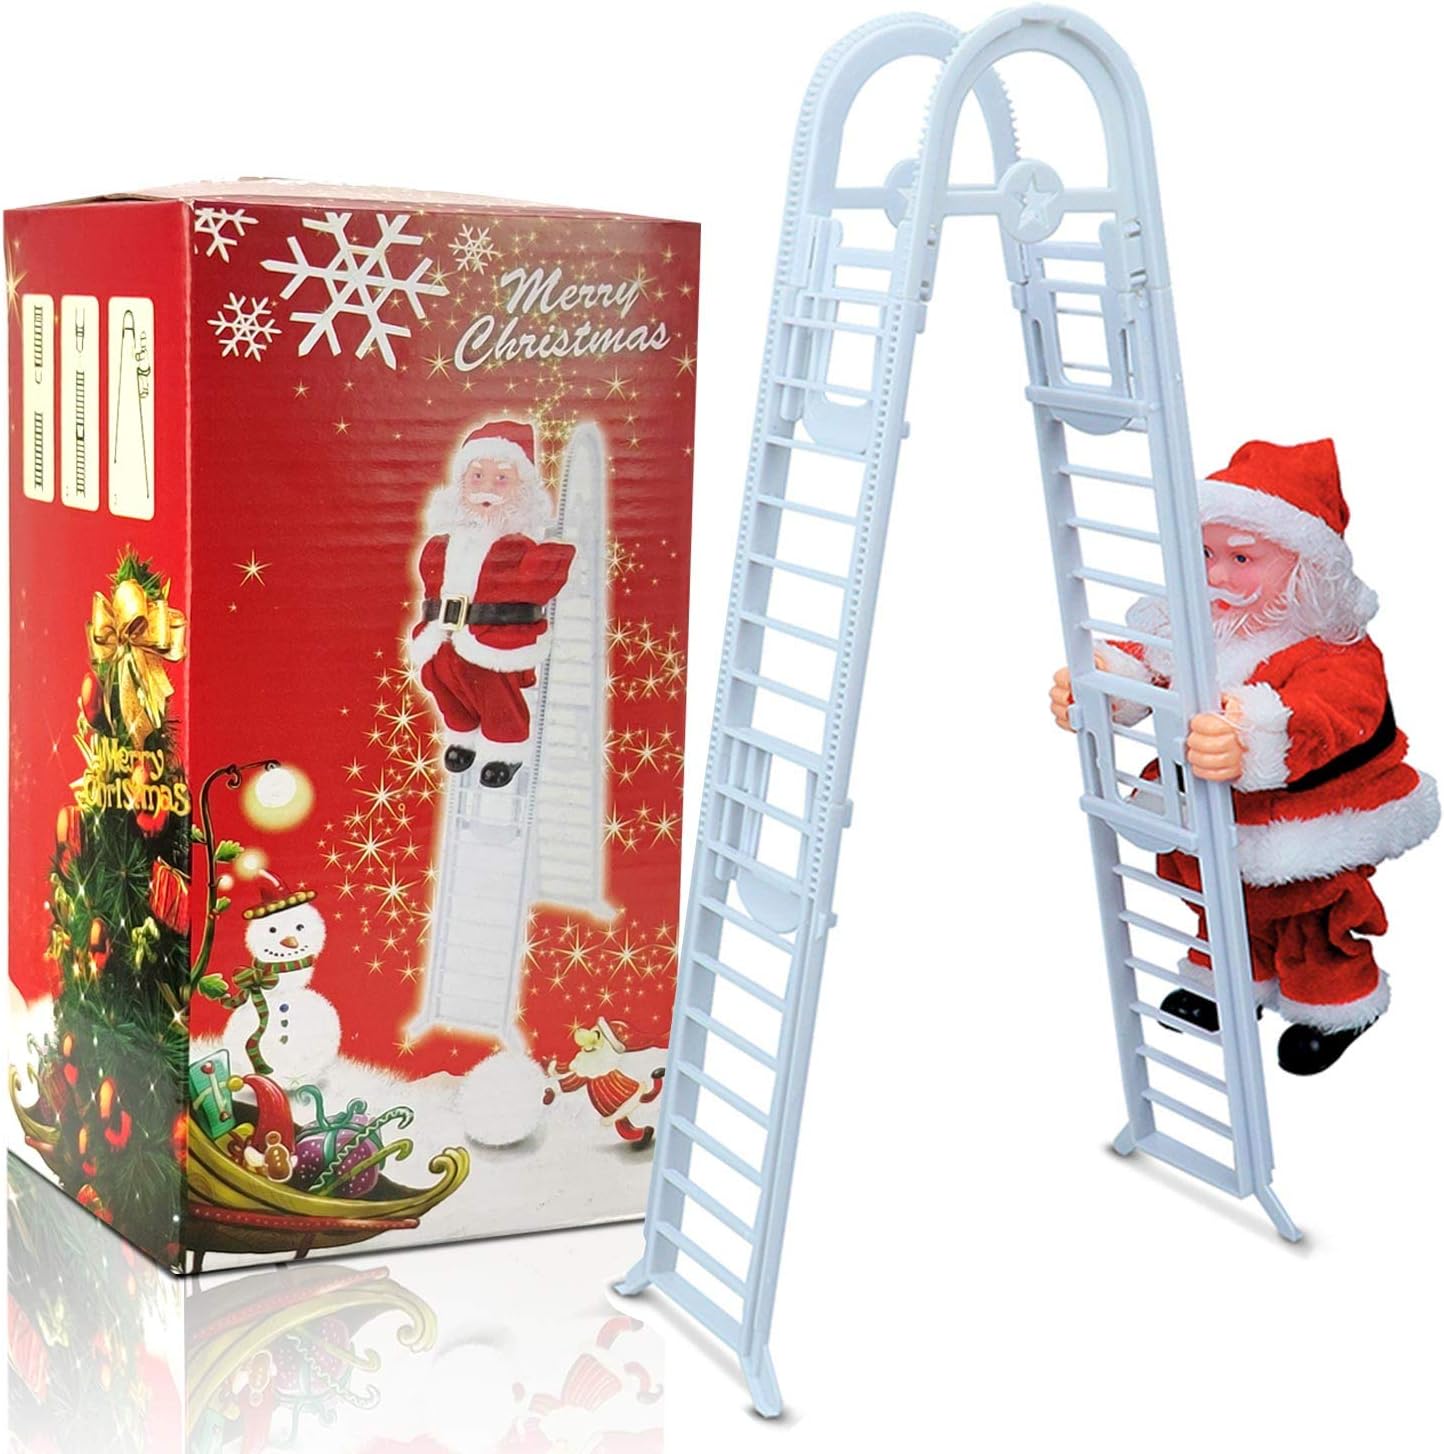 Santa Claus Klettern Leiter Singen Jingle Bells Elektrische Spielzeug Weihnachten Dekoration Kinder Geschenk Puppe